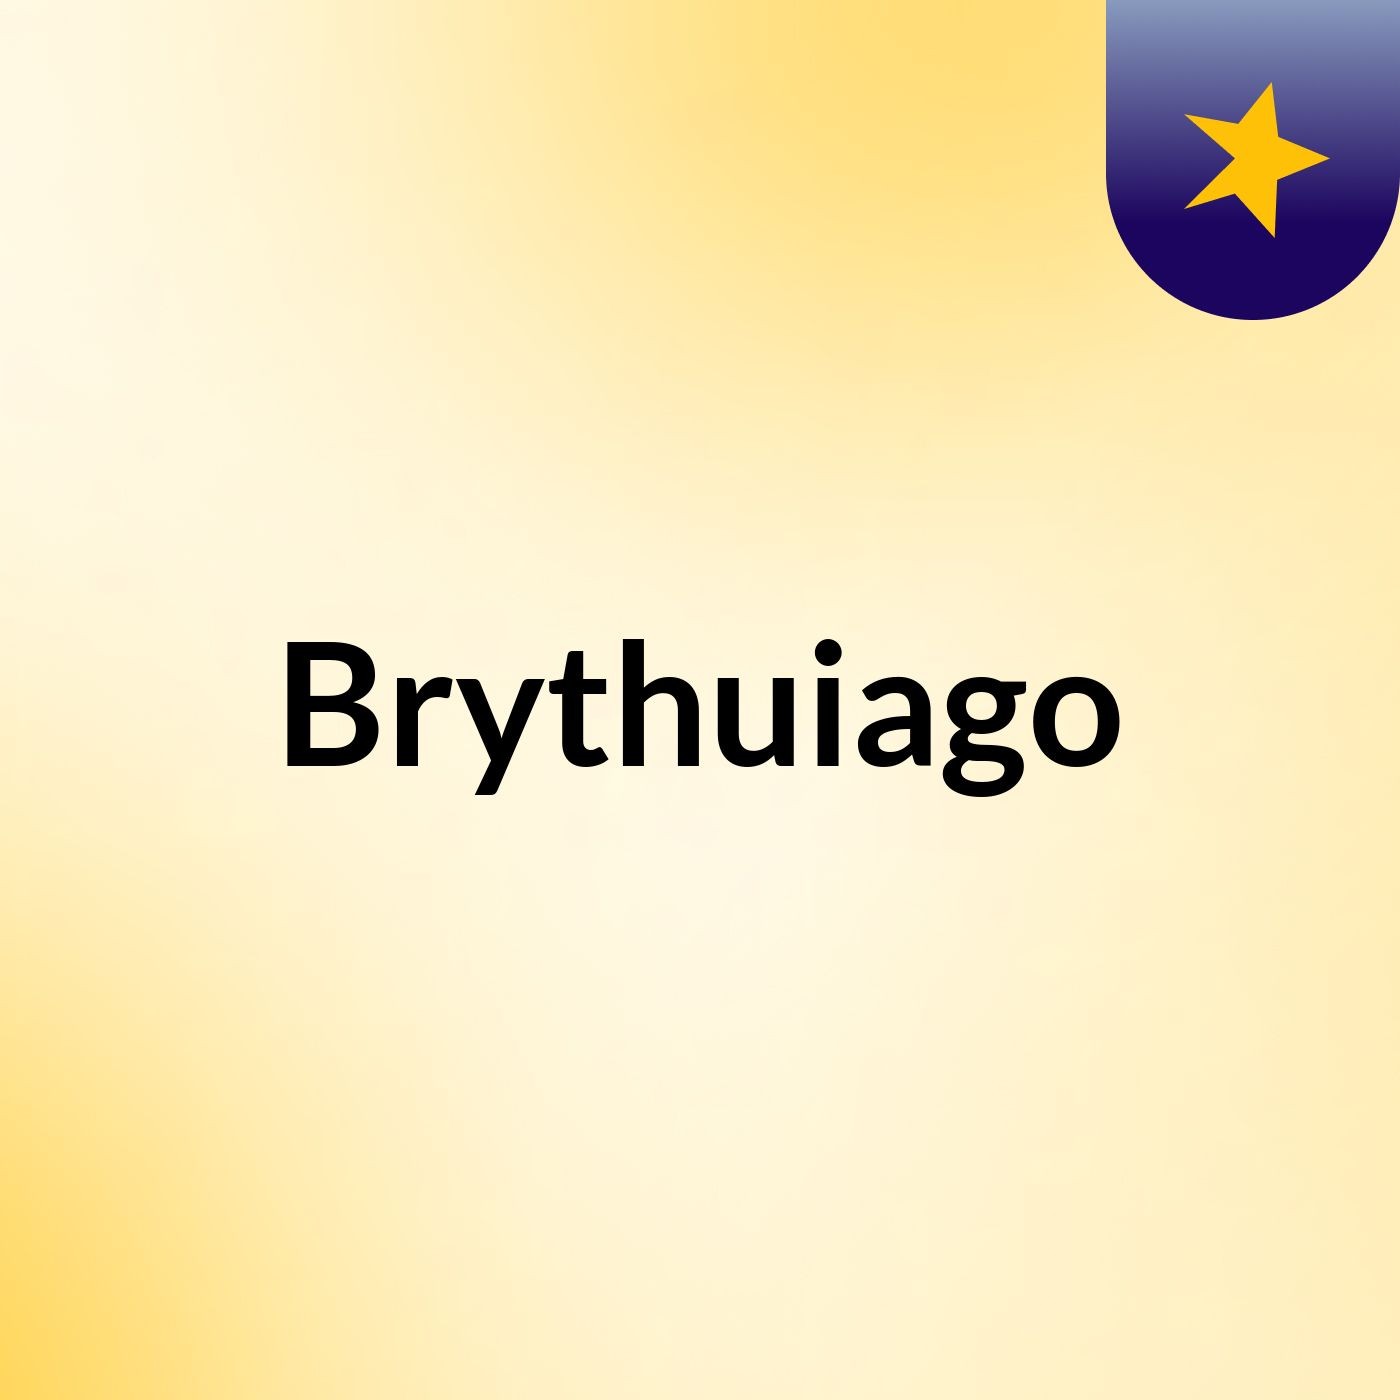 Brythuiago